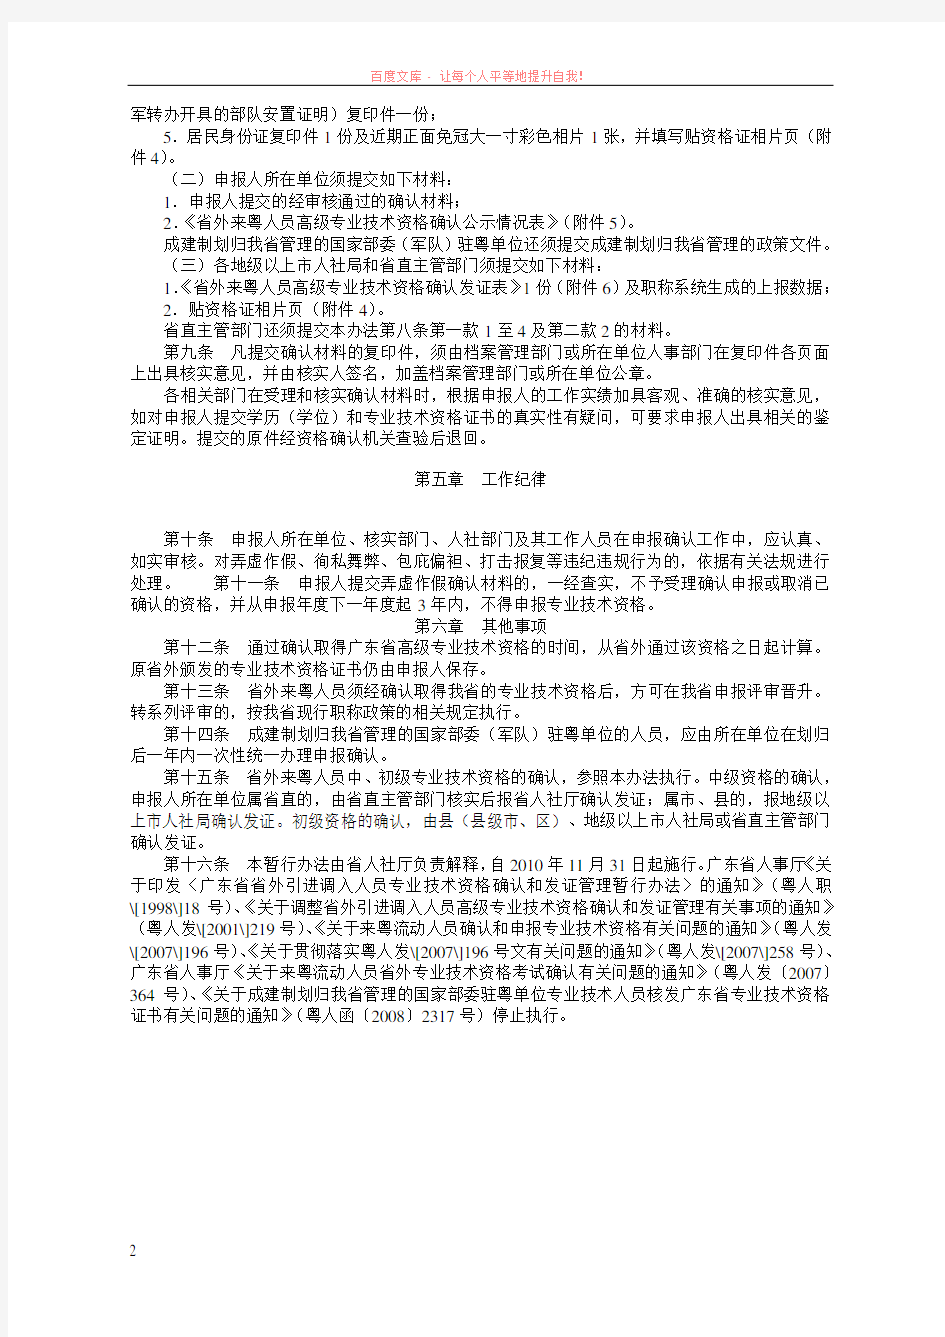 广东省人力资源和社会保障厅关于省外来粤人员高级专业技术资格确认的暂行办法 (1)